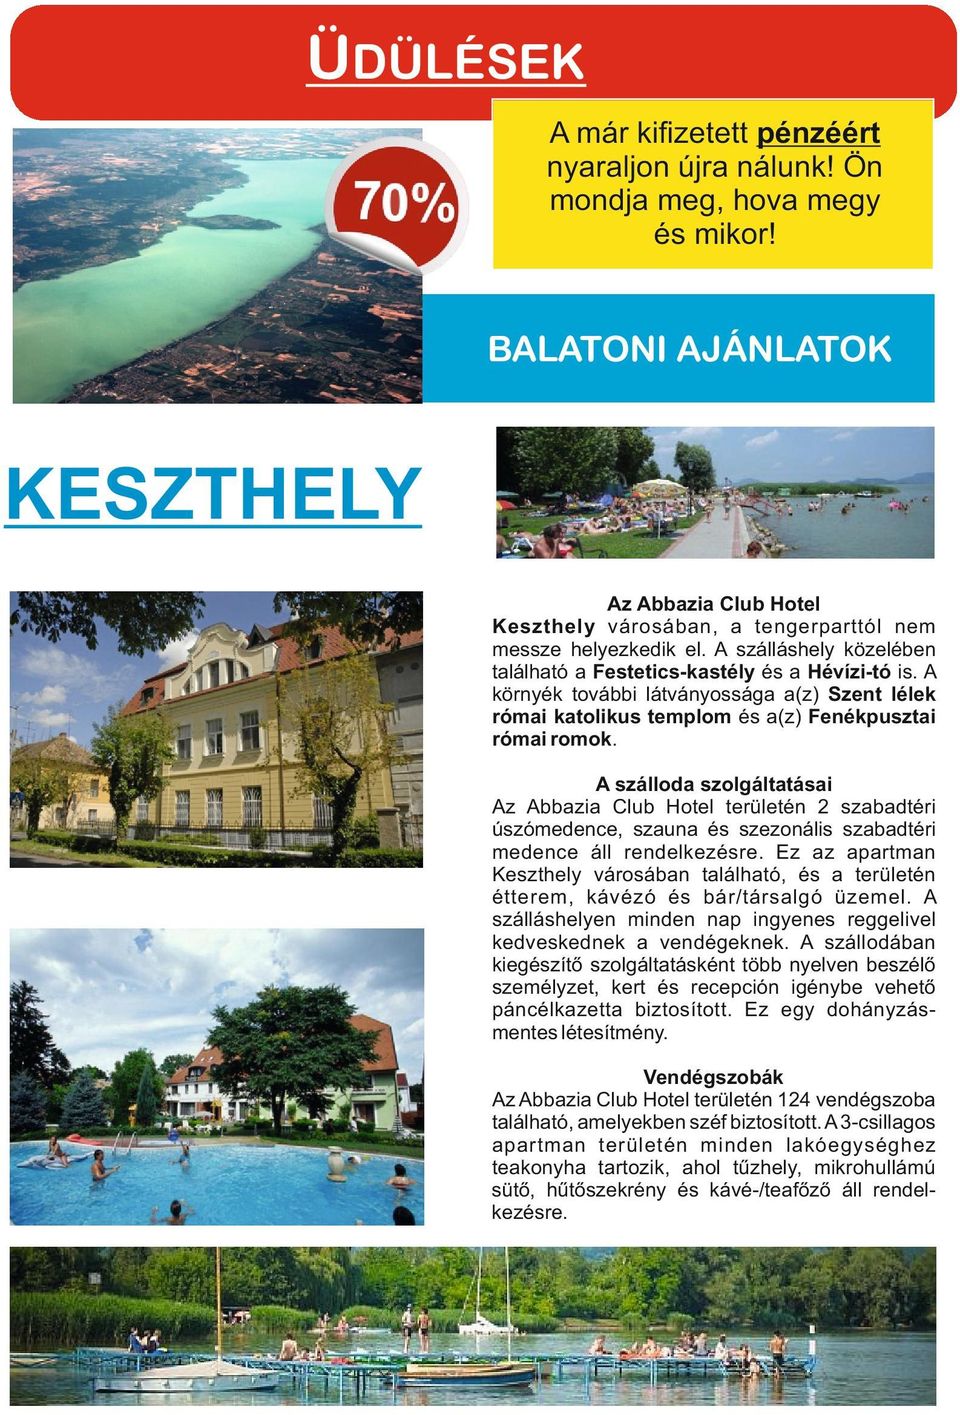 A szálloda szolgáltatásai Az Abbazia Club Hotel területén 2 szabadtéri úszómedence, szauna és szezonális szabadtéri medence áll rendelkezésre.